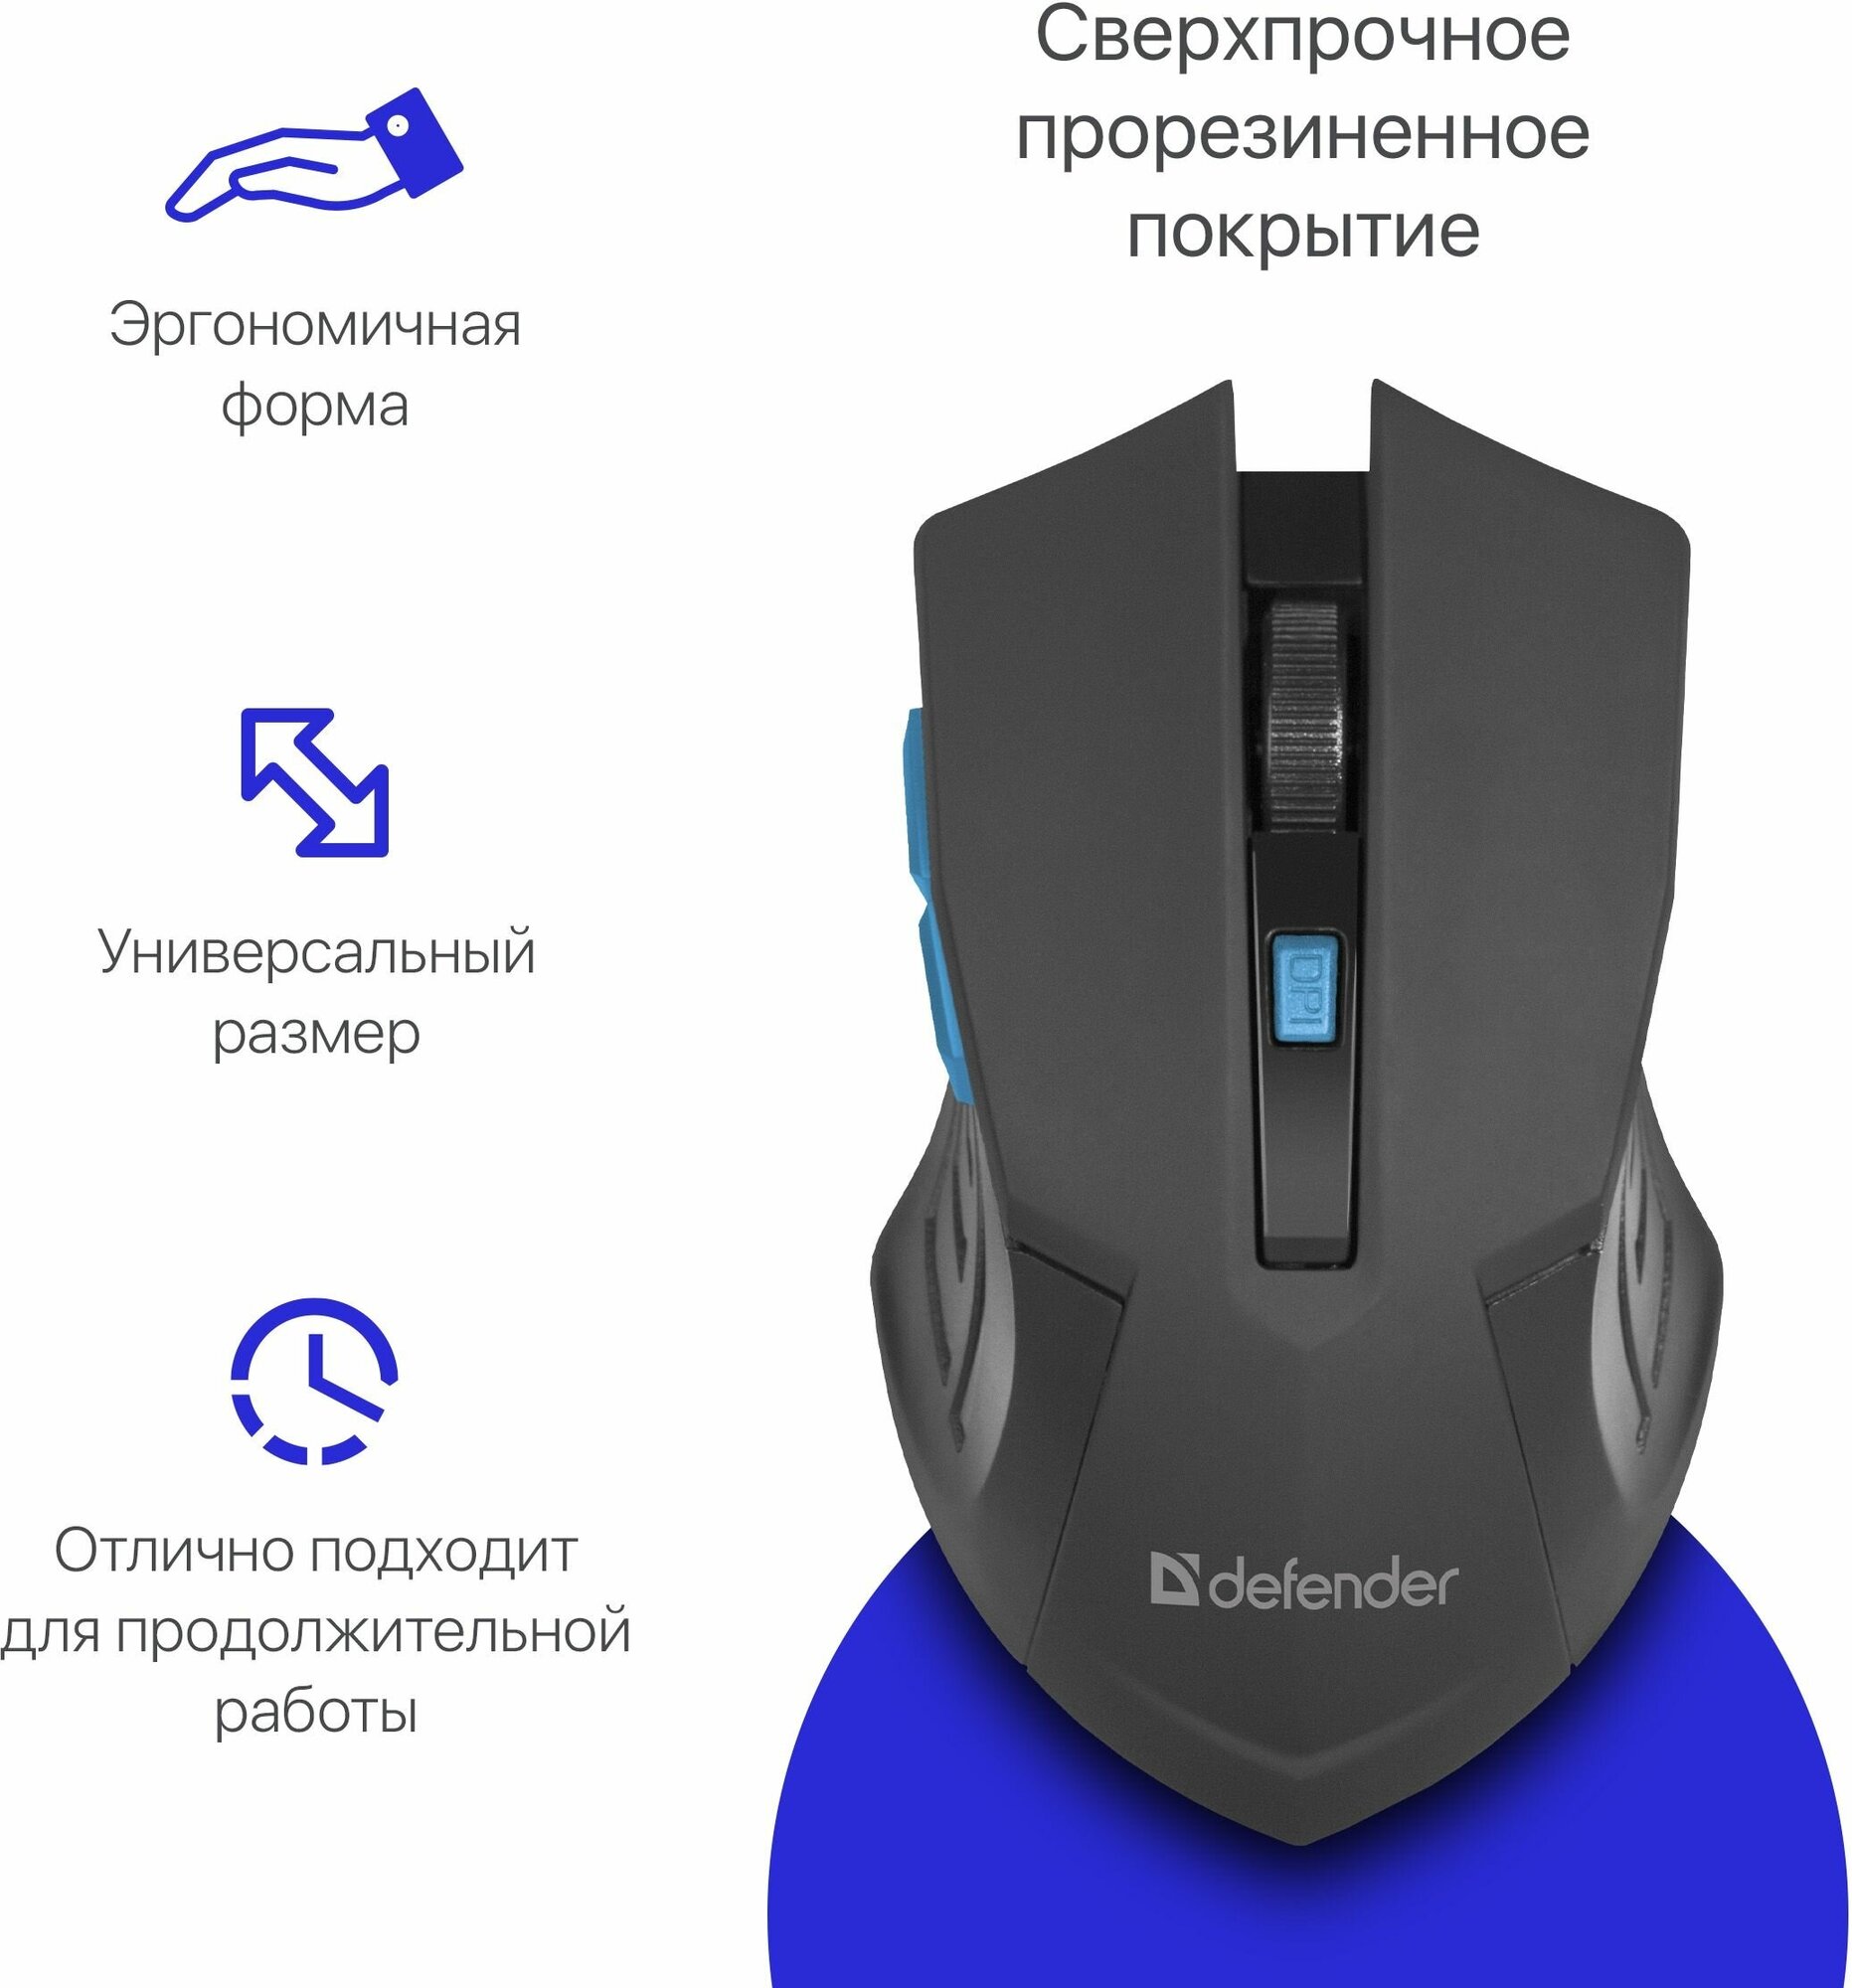 Беспроводная мышь Defender Accura MM-275, синий, 6 кнопок, 800-1600 dpi